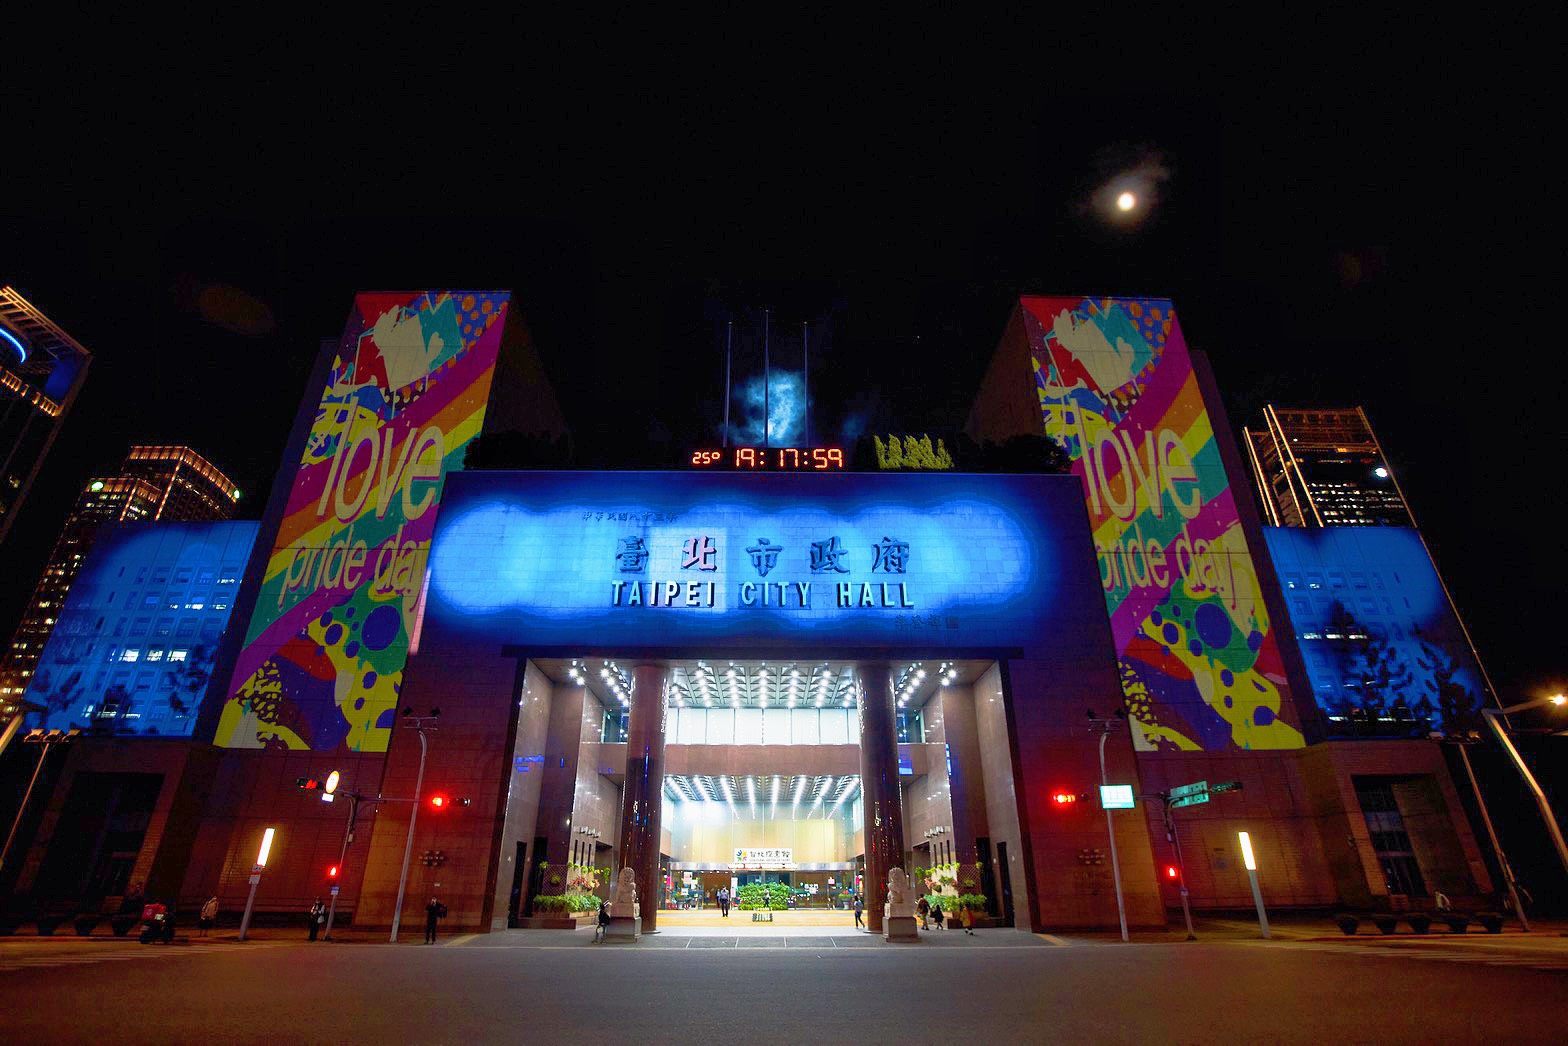 彩虹燈光投影秀內容融合臺北在地文化特色及彩虹元素並搭配主題音樂，讓情境精彩動人